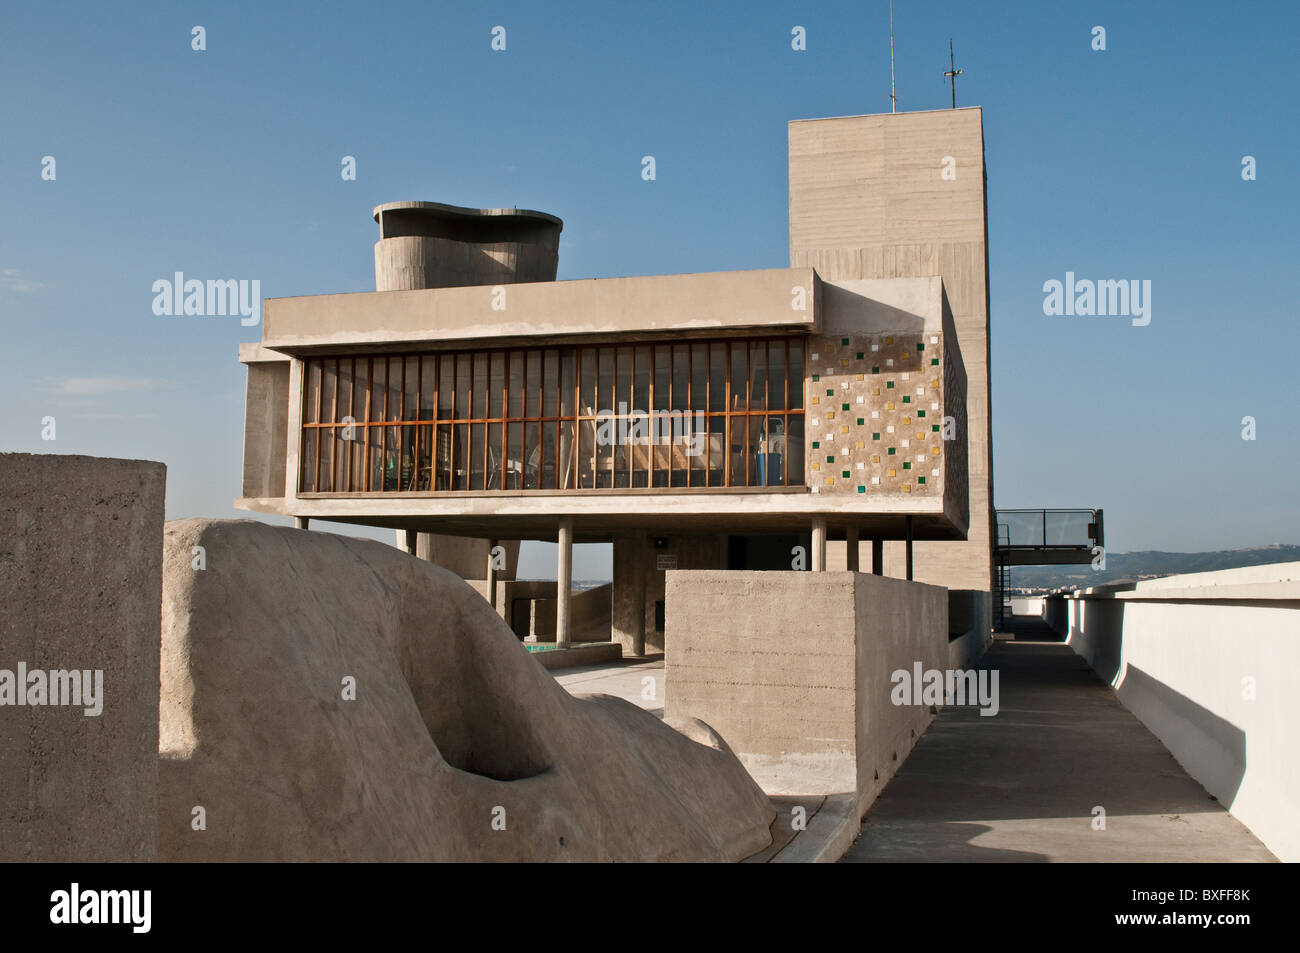 Dachterrasse, Unite d ' Habitation von Le Corbusier, Marseille, Frankreich Stockfoto